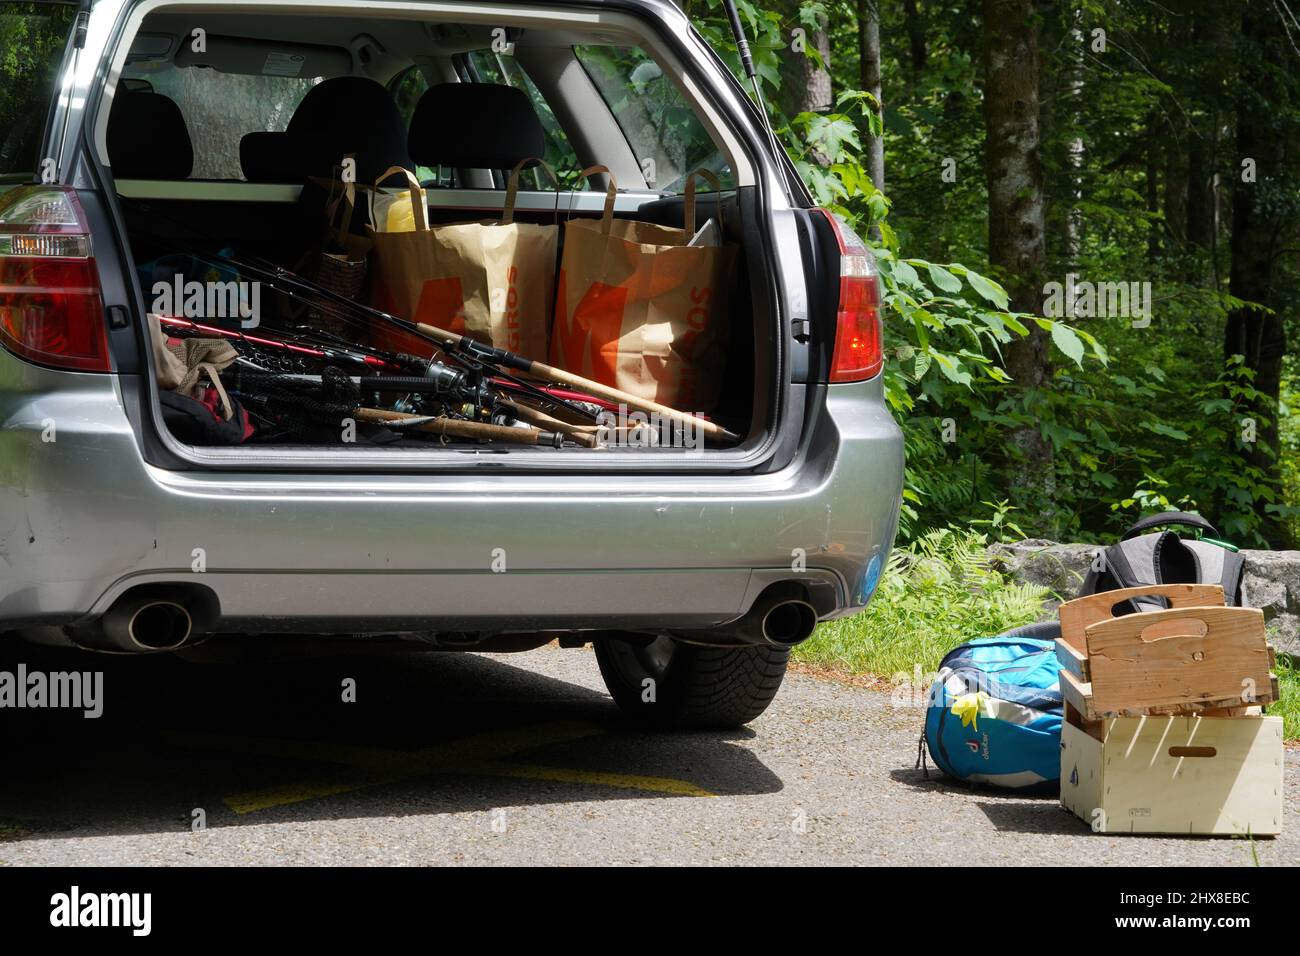 Gepäckraum eines Autos voller Angelausrüstung. Es gibt einige Rucksäcke und Holzkisten außerhalb des Autos auf dem Boden platziert. Stockfoto